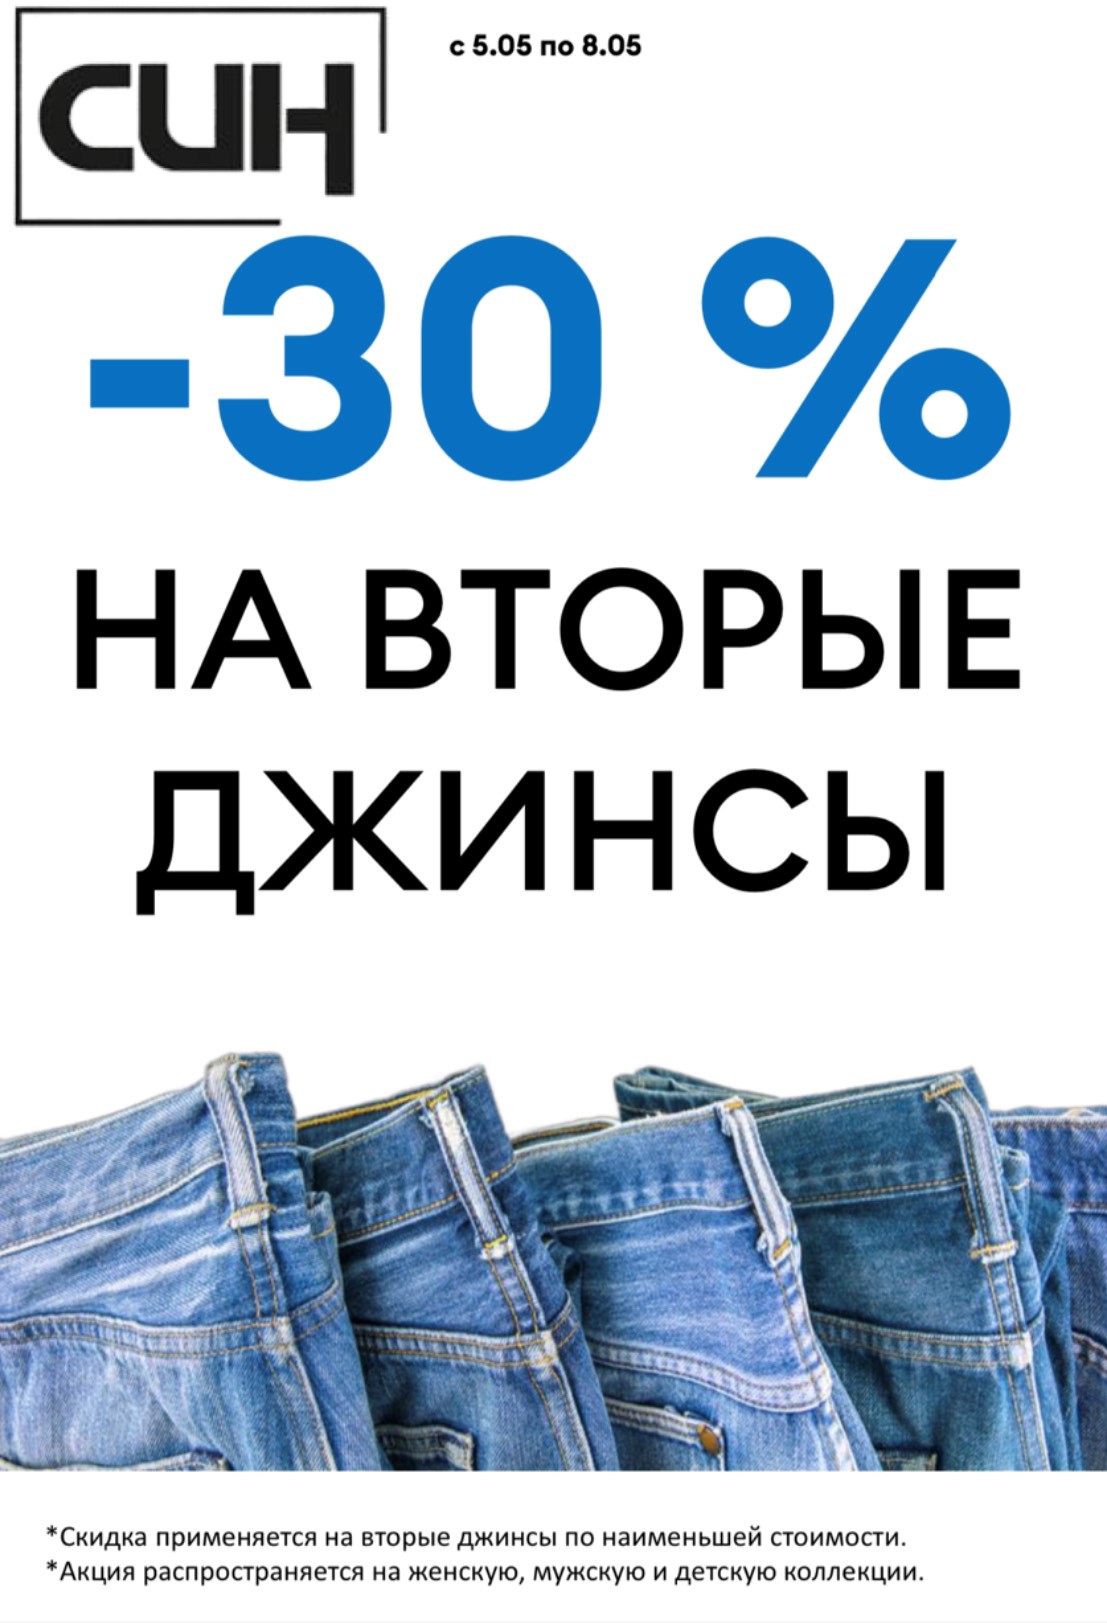 Минус 30% на вторые джинсы!